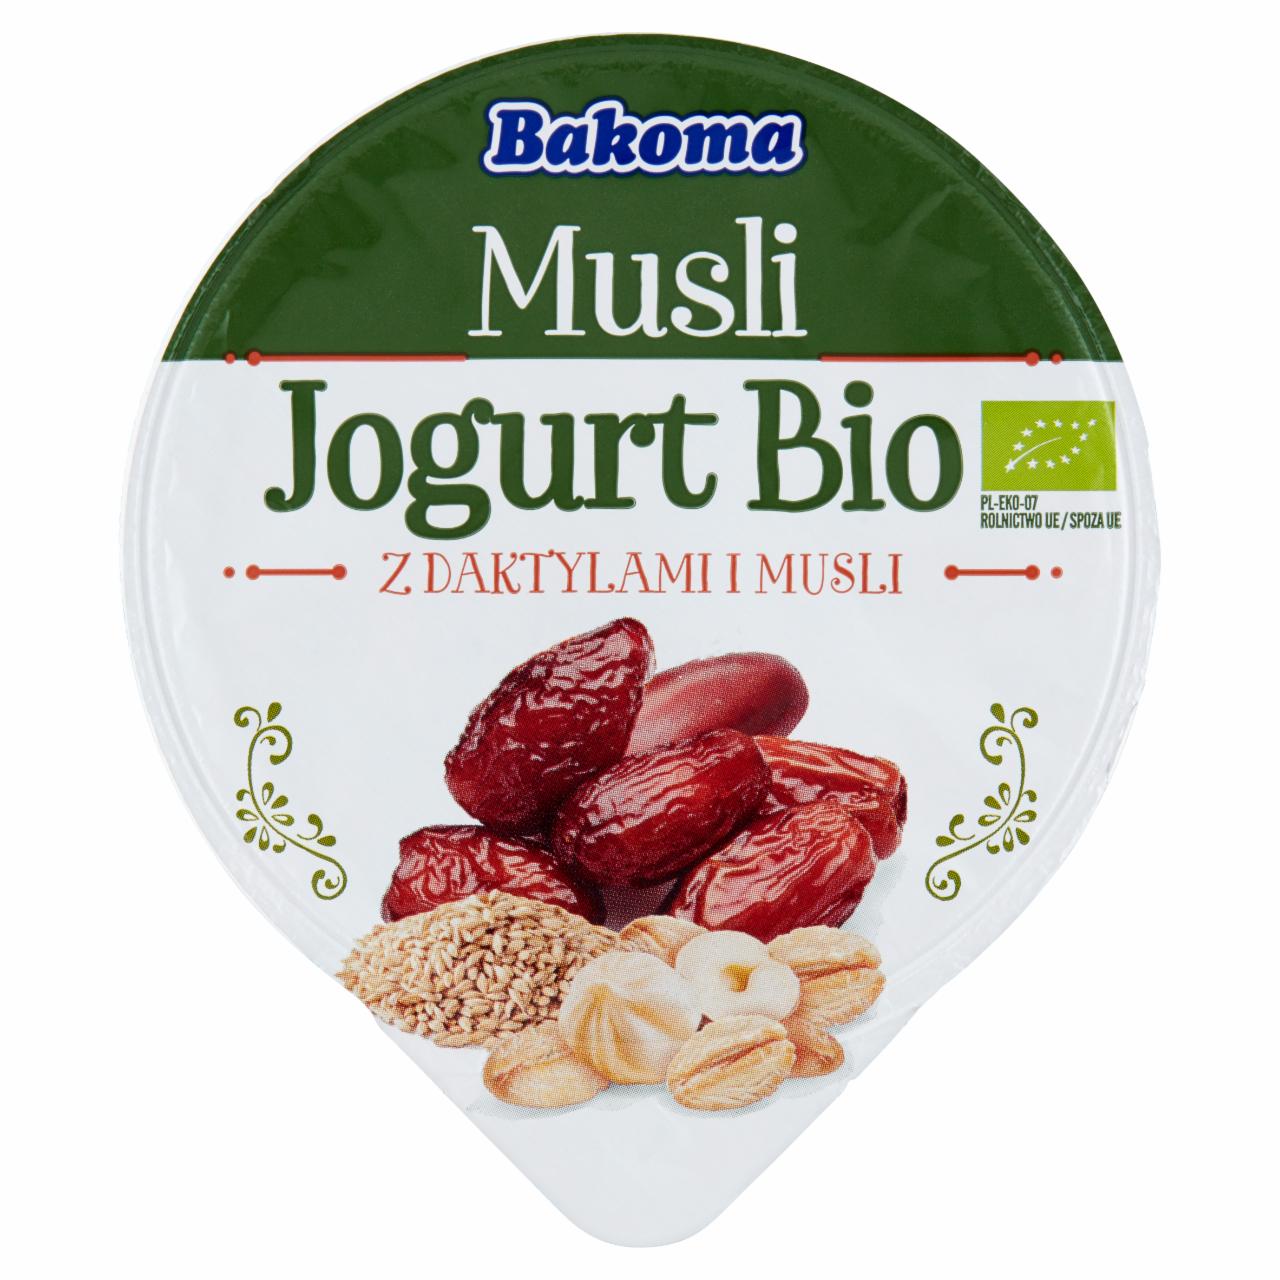 Zdjęcia - Bakoma Musli Jogurt Bio z daktylami i musli 180 g